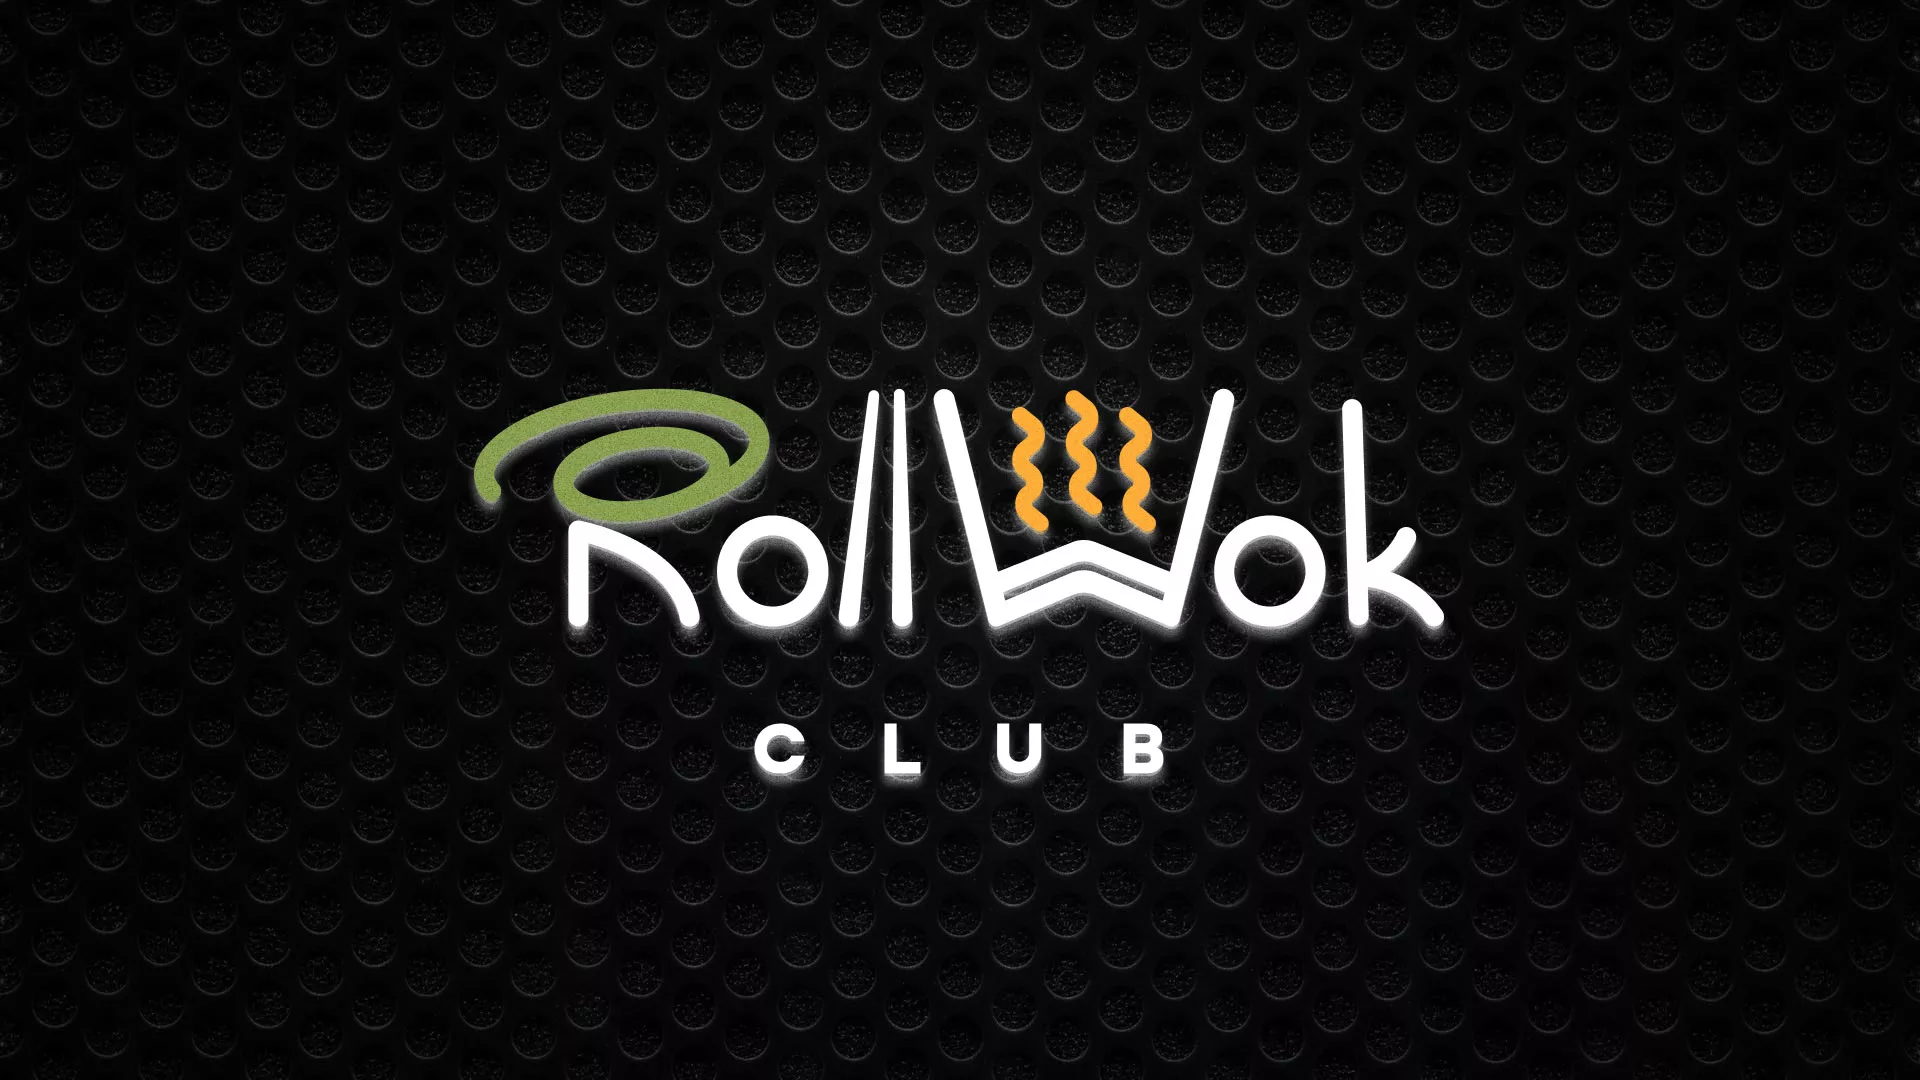 Брендирование торговых точек суши-бара «Roll Wok Club» в Ханты-Мансийске